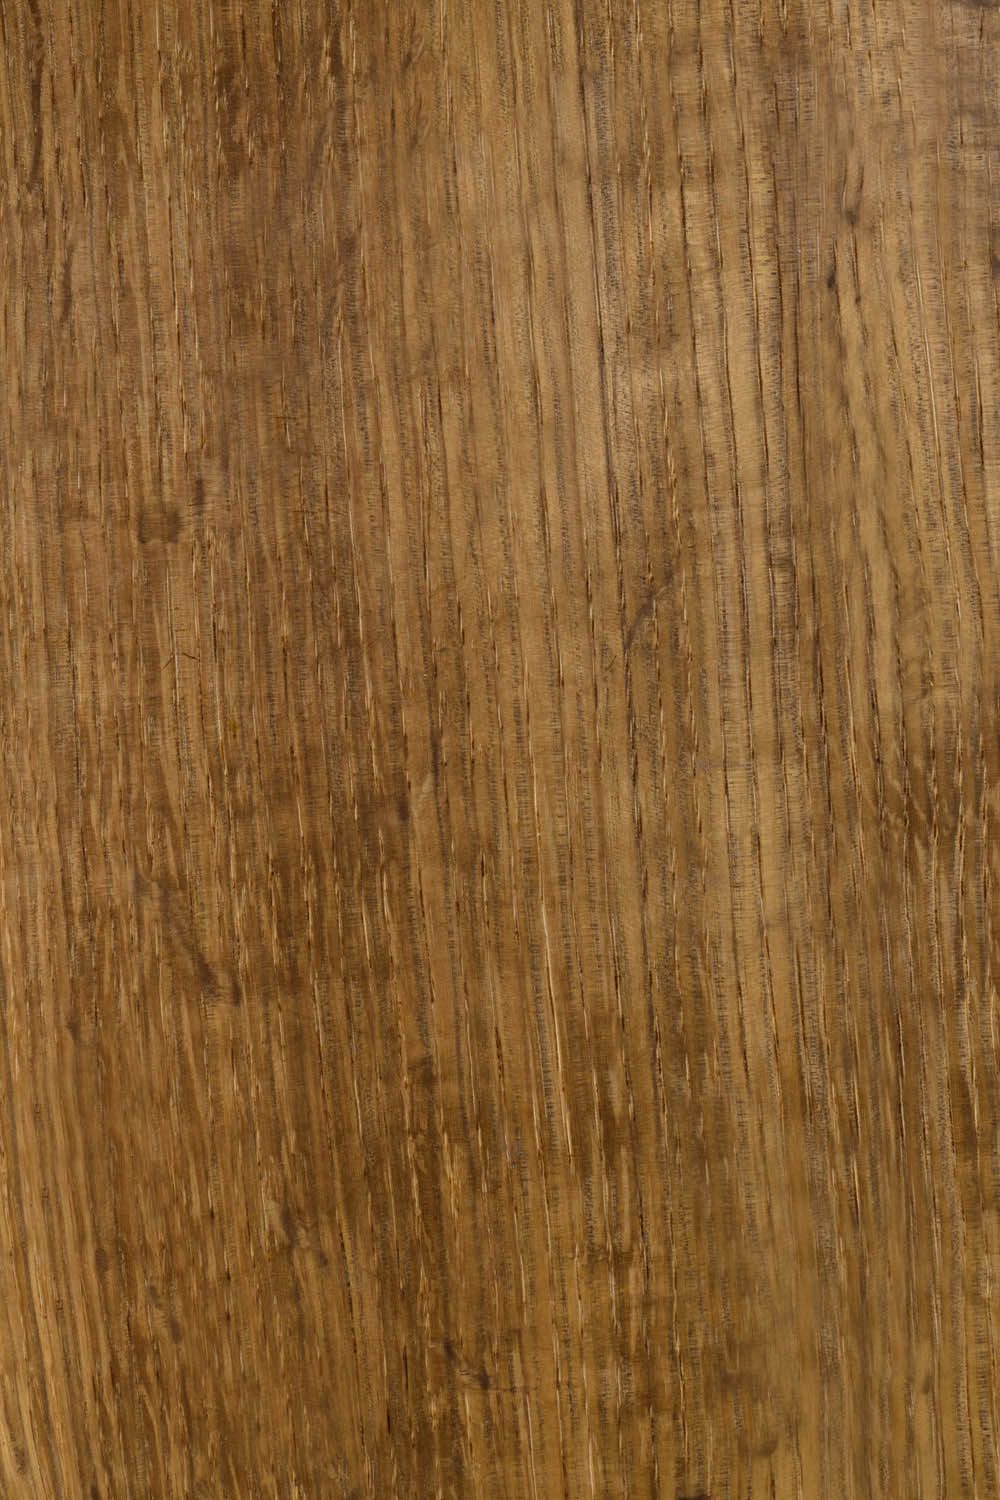 Fumed White Oak Raw Wood Unbacked Veneer  38.5 x 7 inches          4706-07